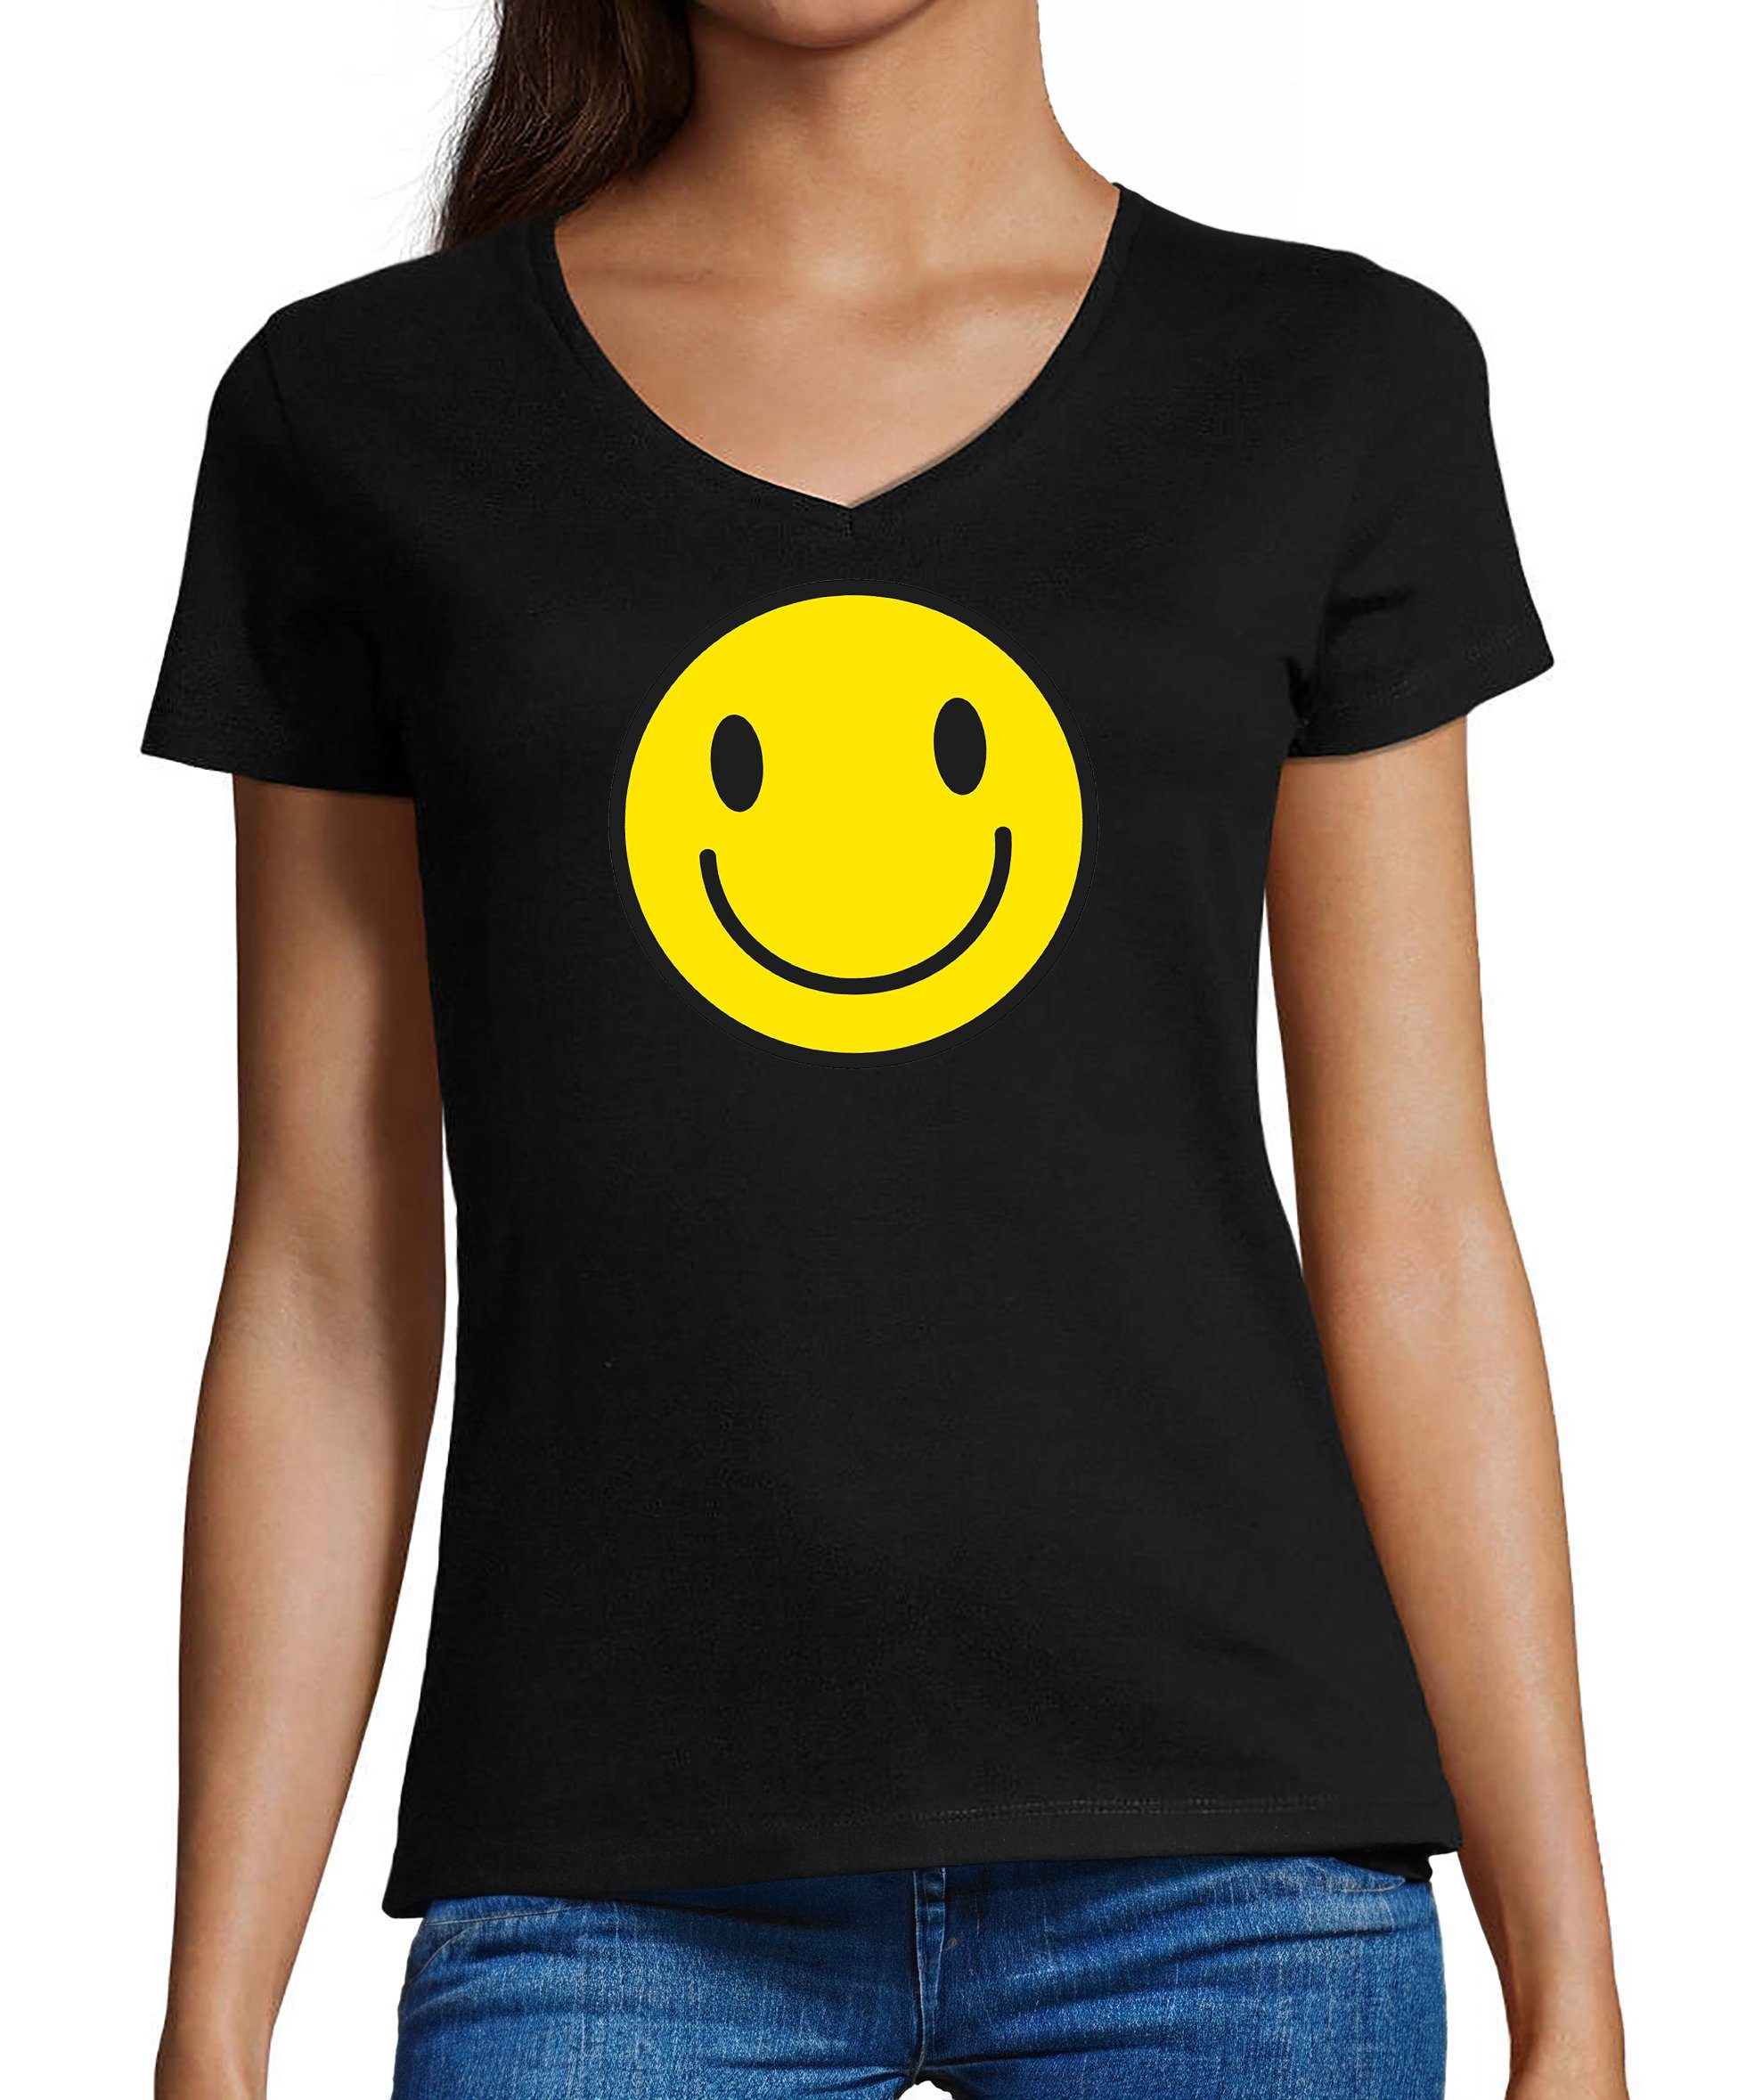 MyDesign24 T-Shirt Damen Smiley Print Shirt - Lächelnder Smiley V-Ausschnitt Baumwollshirt mit Aufdruck Slim Fit, i281 schwarz